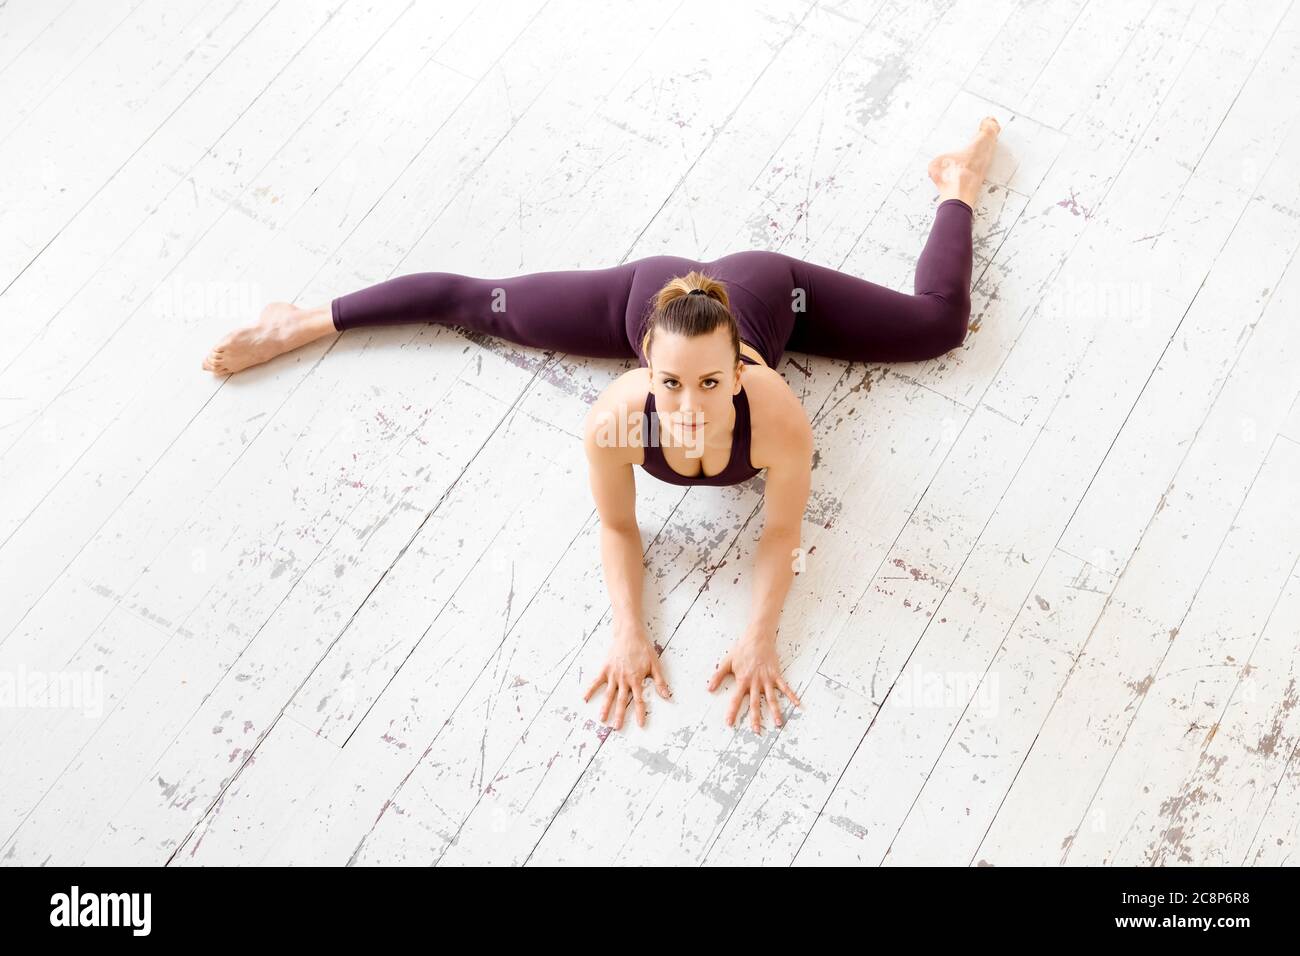 High-Angle-Ansicht einer athletischen jungen Frau, die eine halb frontale geteilte Yoga-Pose auf einem weißen Fitnessboden mit Copyspace in einem Fitness- und aktiven Lebensstil macht Stockfoto